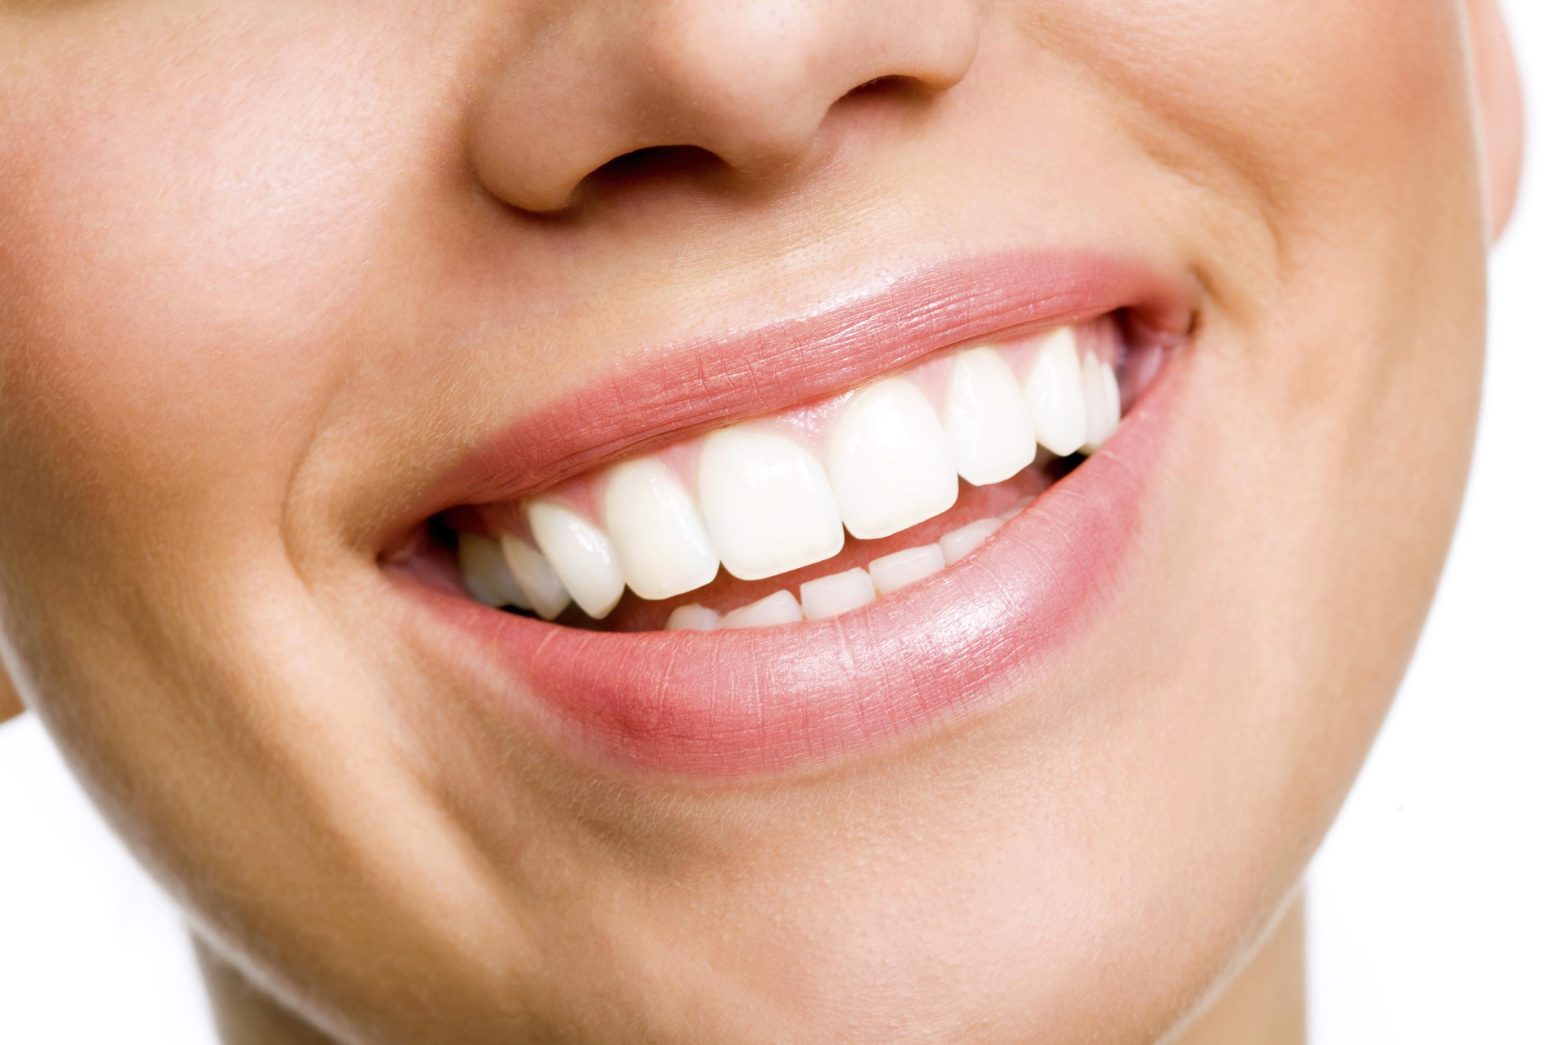 SUPREME SMILE Teeth Whitening Kit User Manual